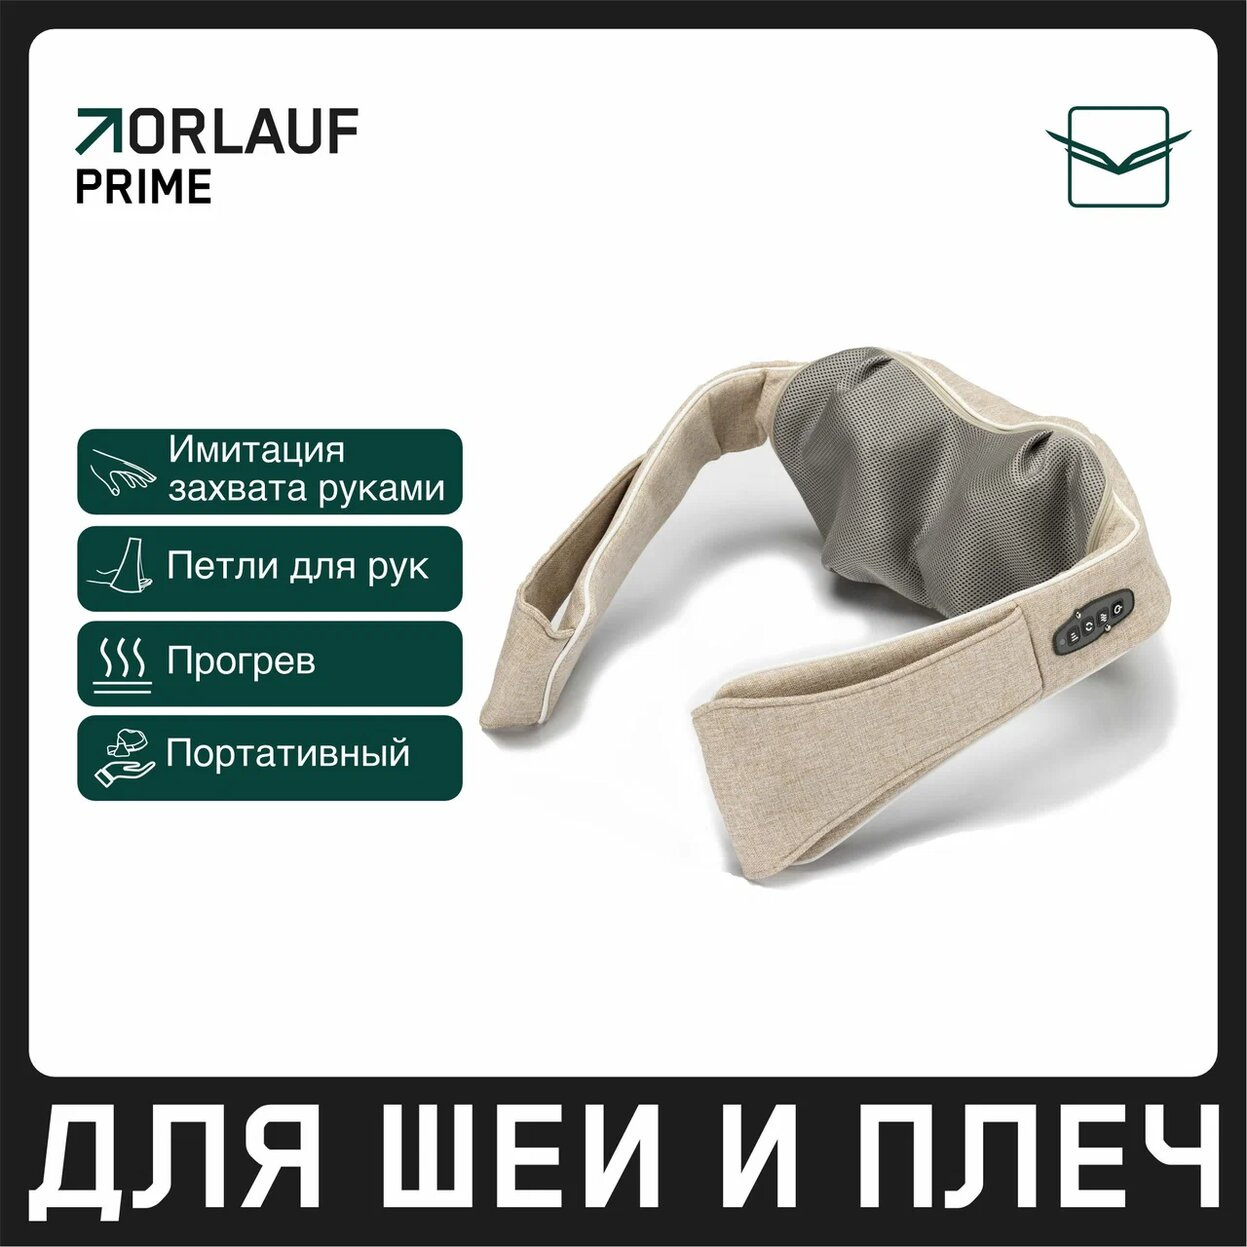 Orlauf Prime из каталога устройств для массажа в Тольятти по цене 11900 ₽